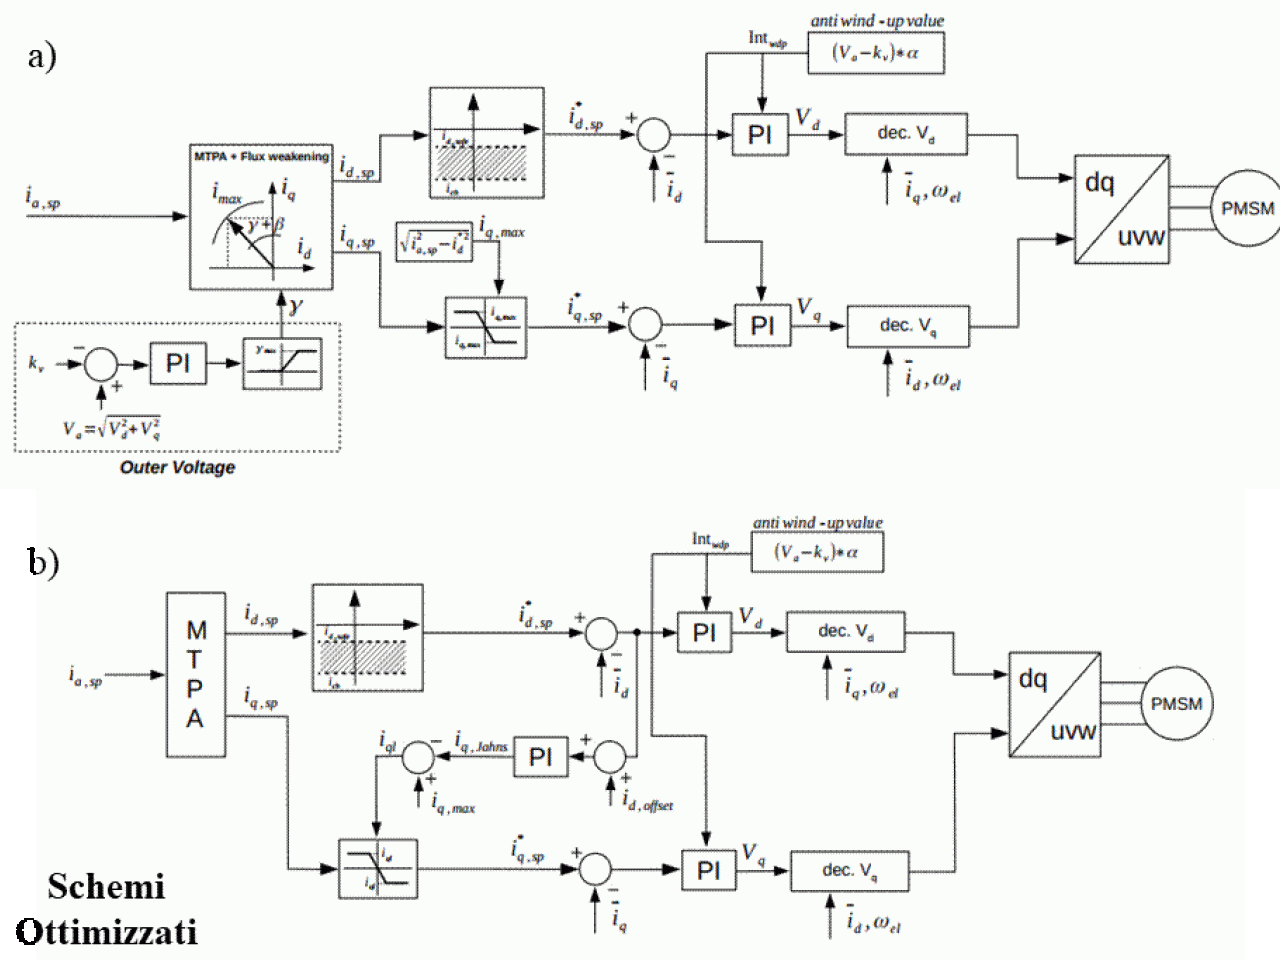 Schemi a blocchi dei due sistemi di controllo ottimizzati. Schema a) controllo basato sulla saturazione degli anelli di corrente, schema b) basato sulla saturazione della tensione del DC BUS.